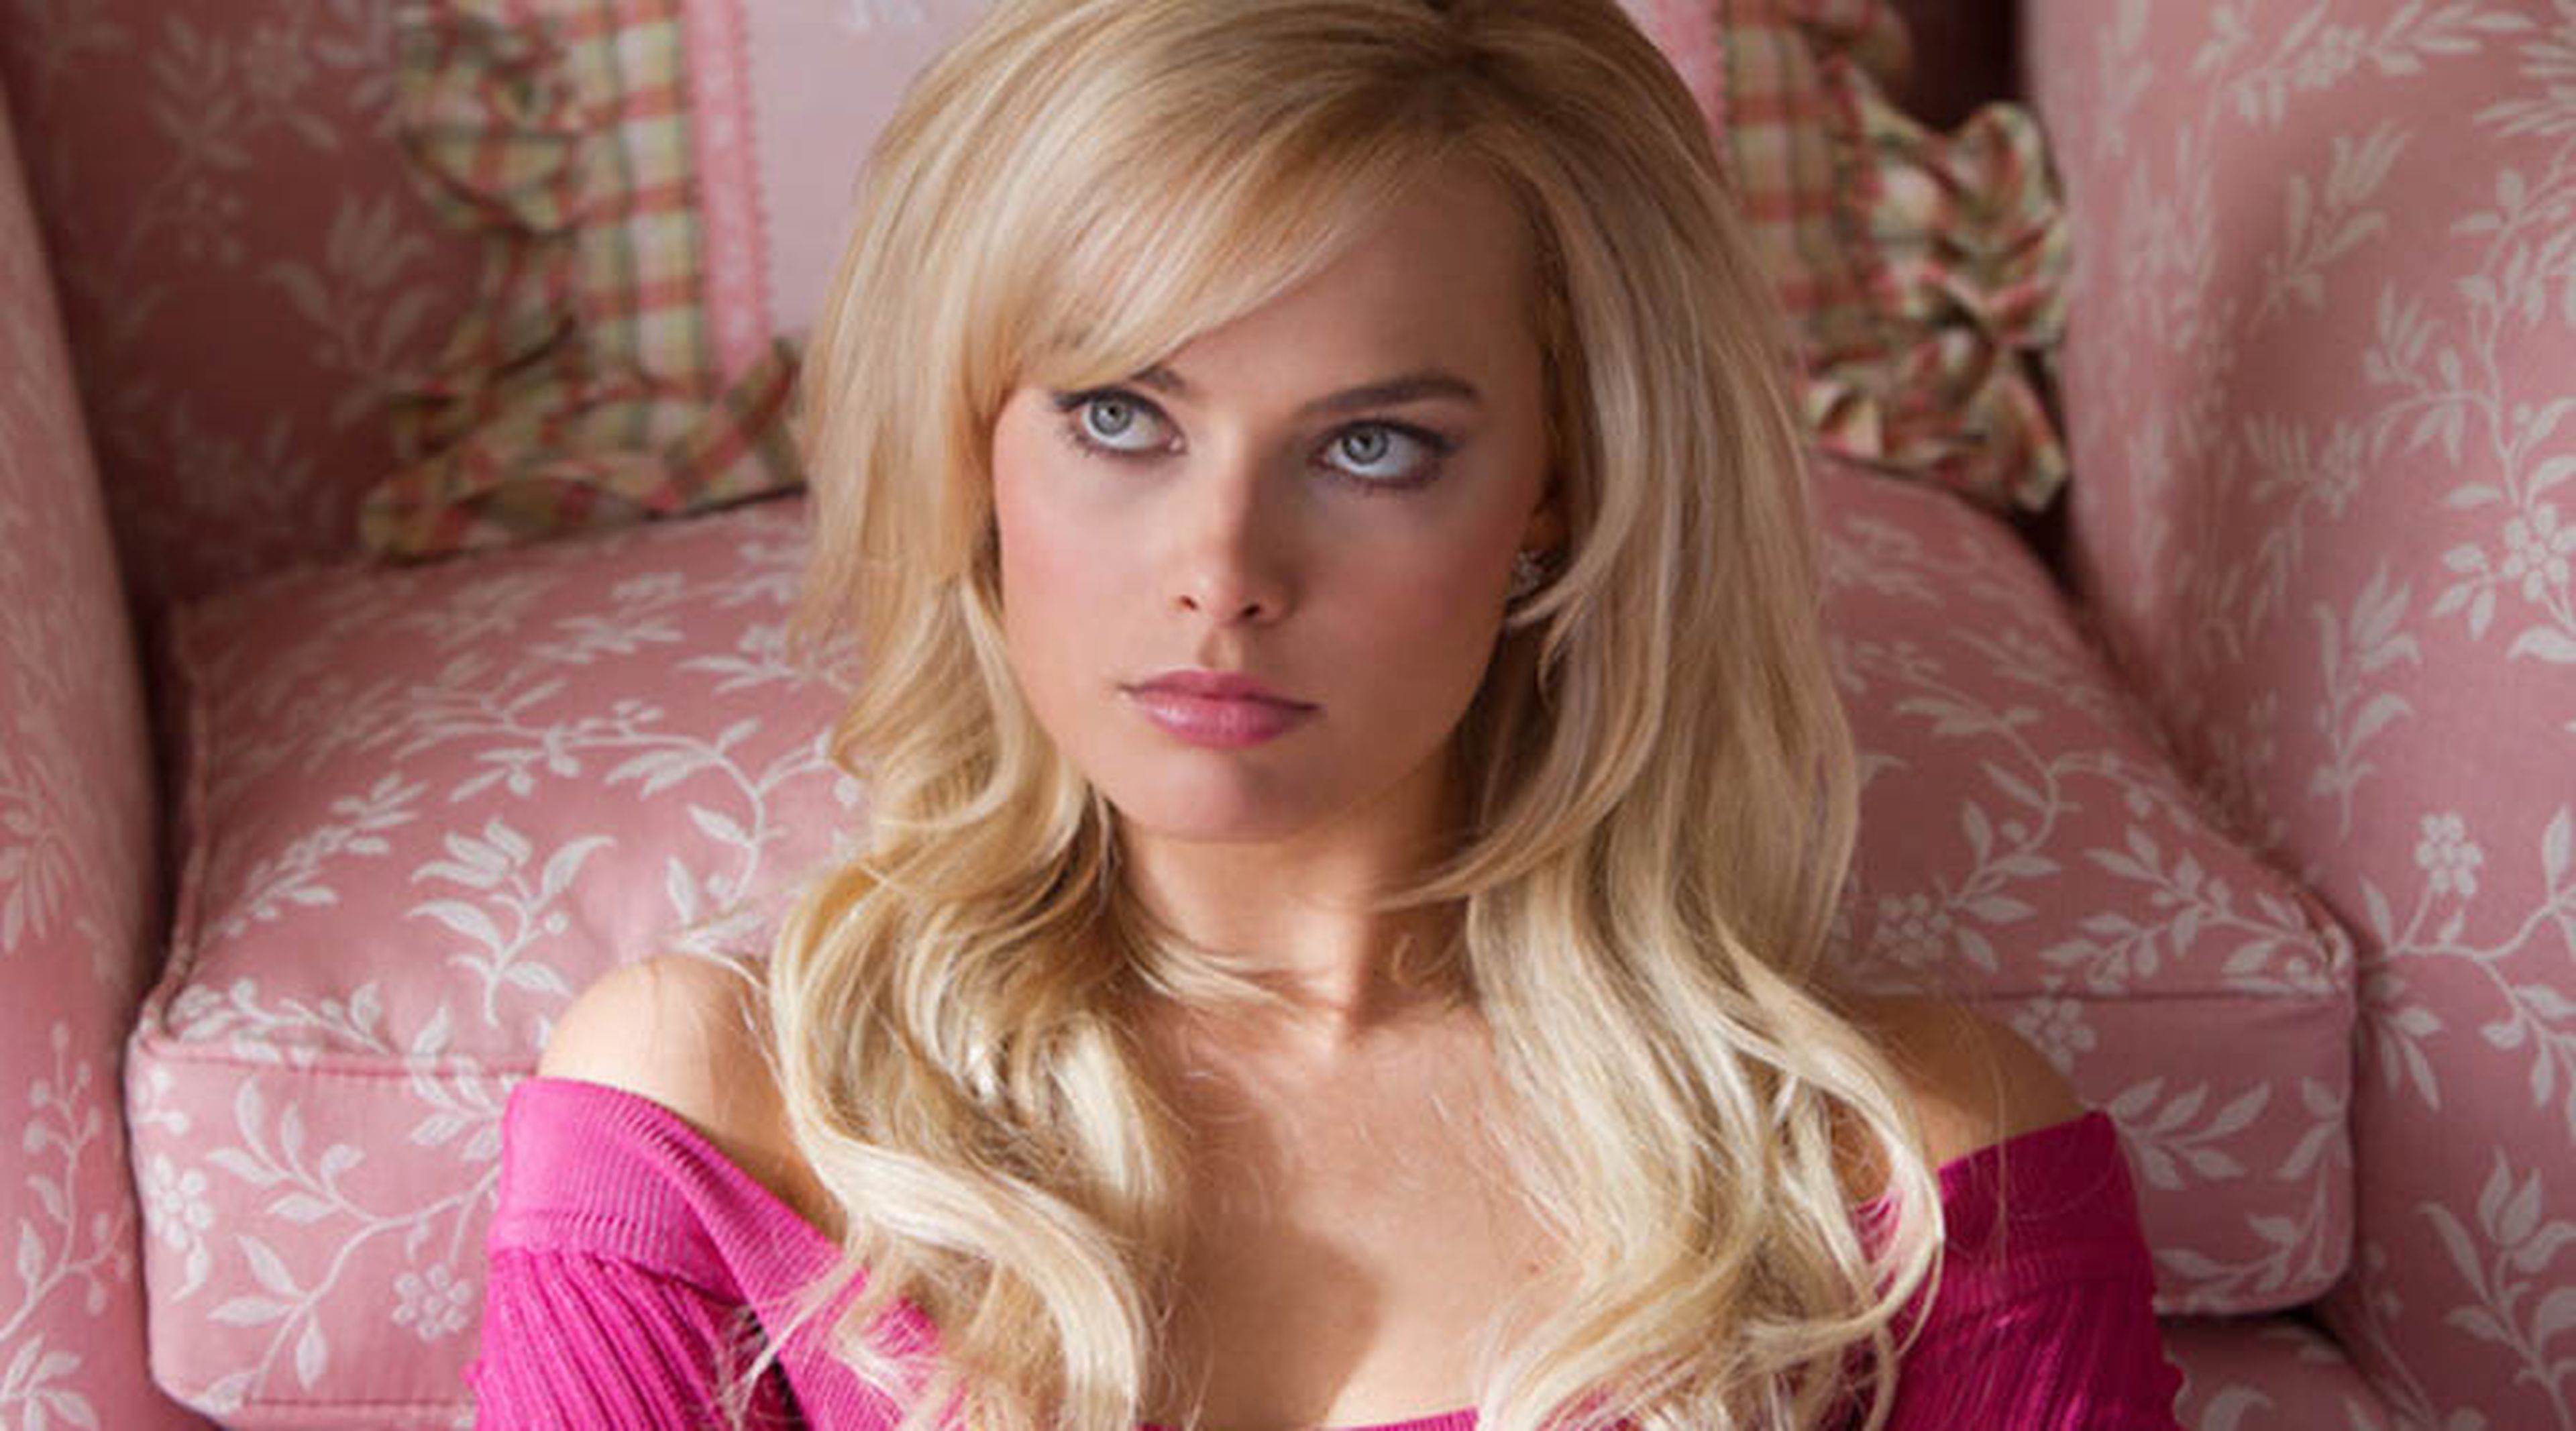 Margot Robbie interpretará a Barbie en la película de imagen real